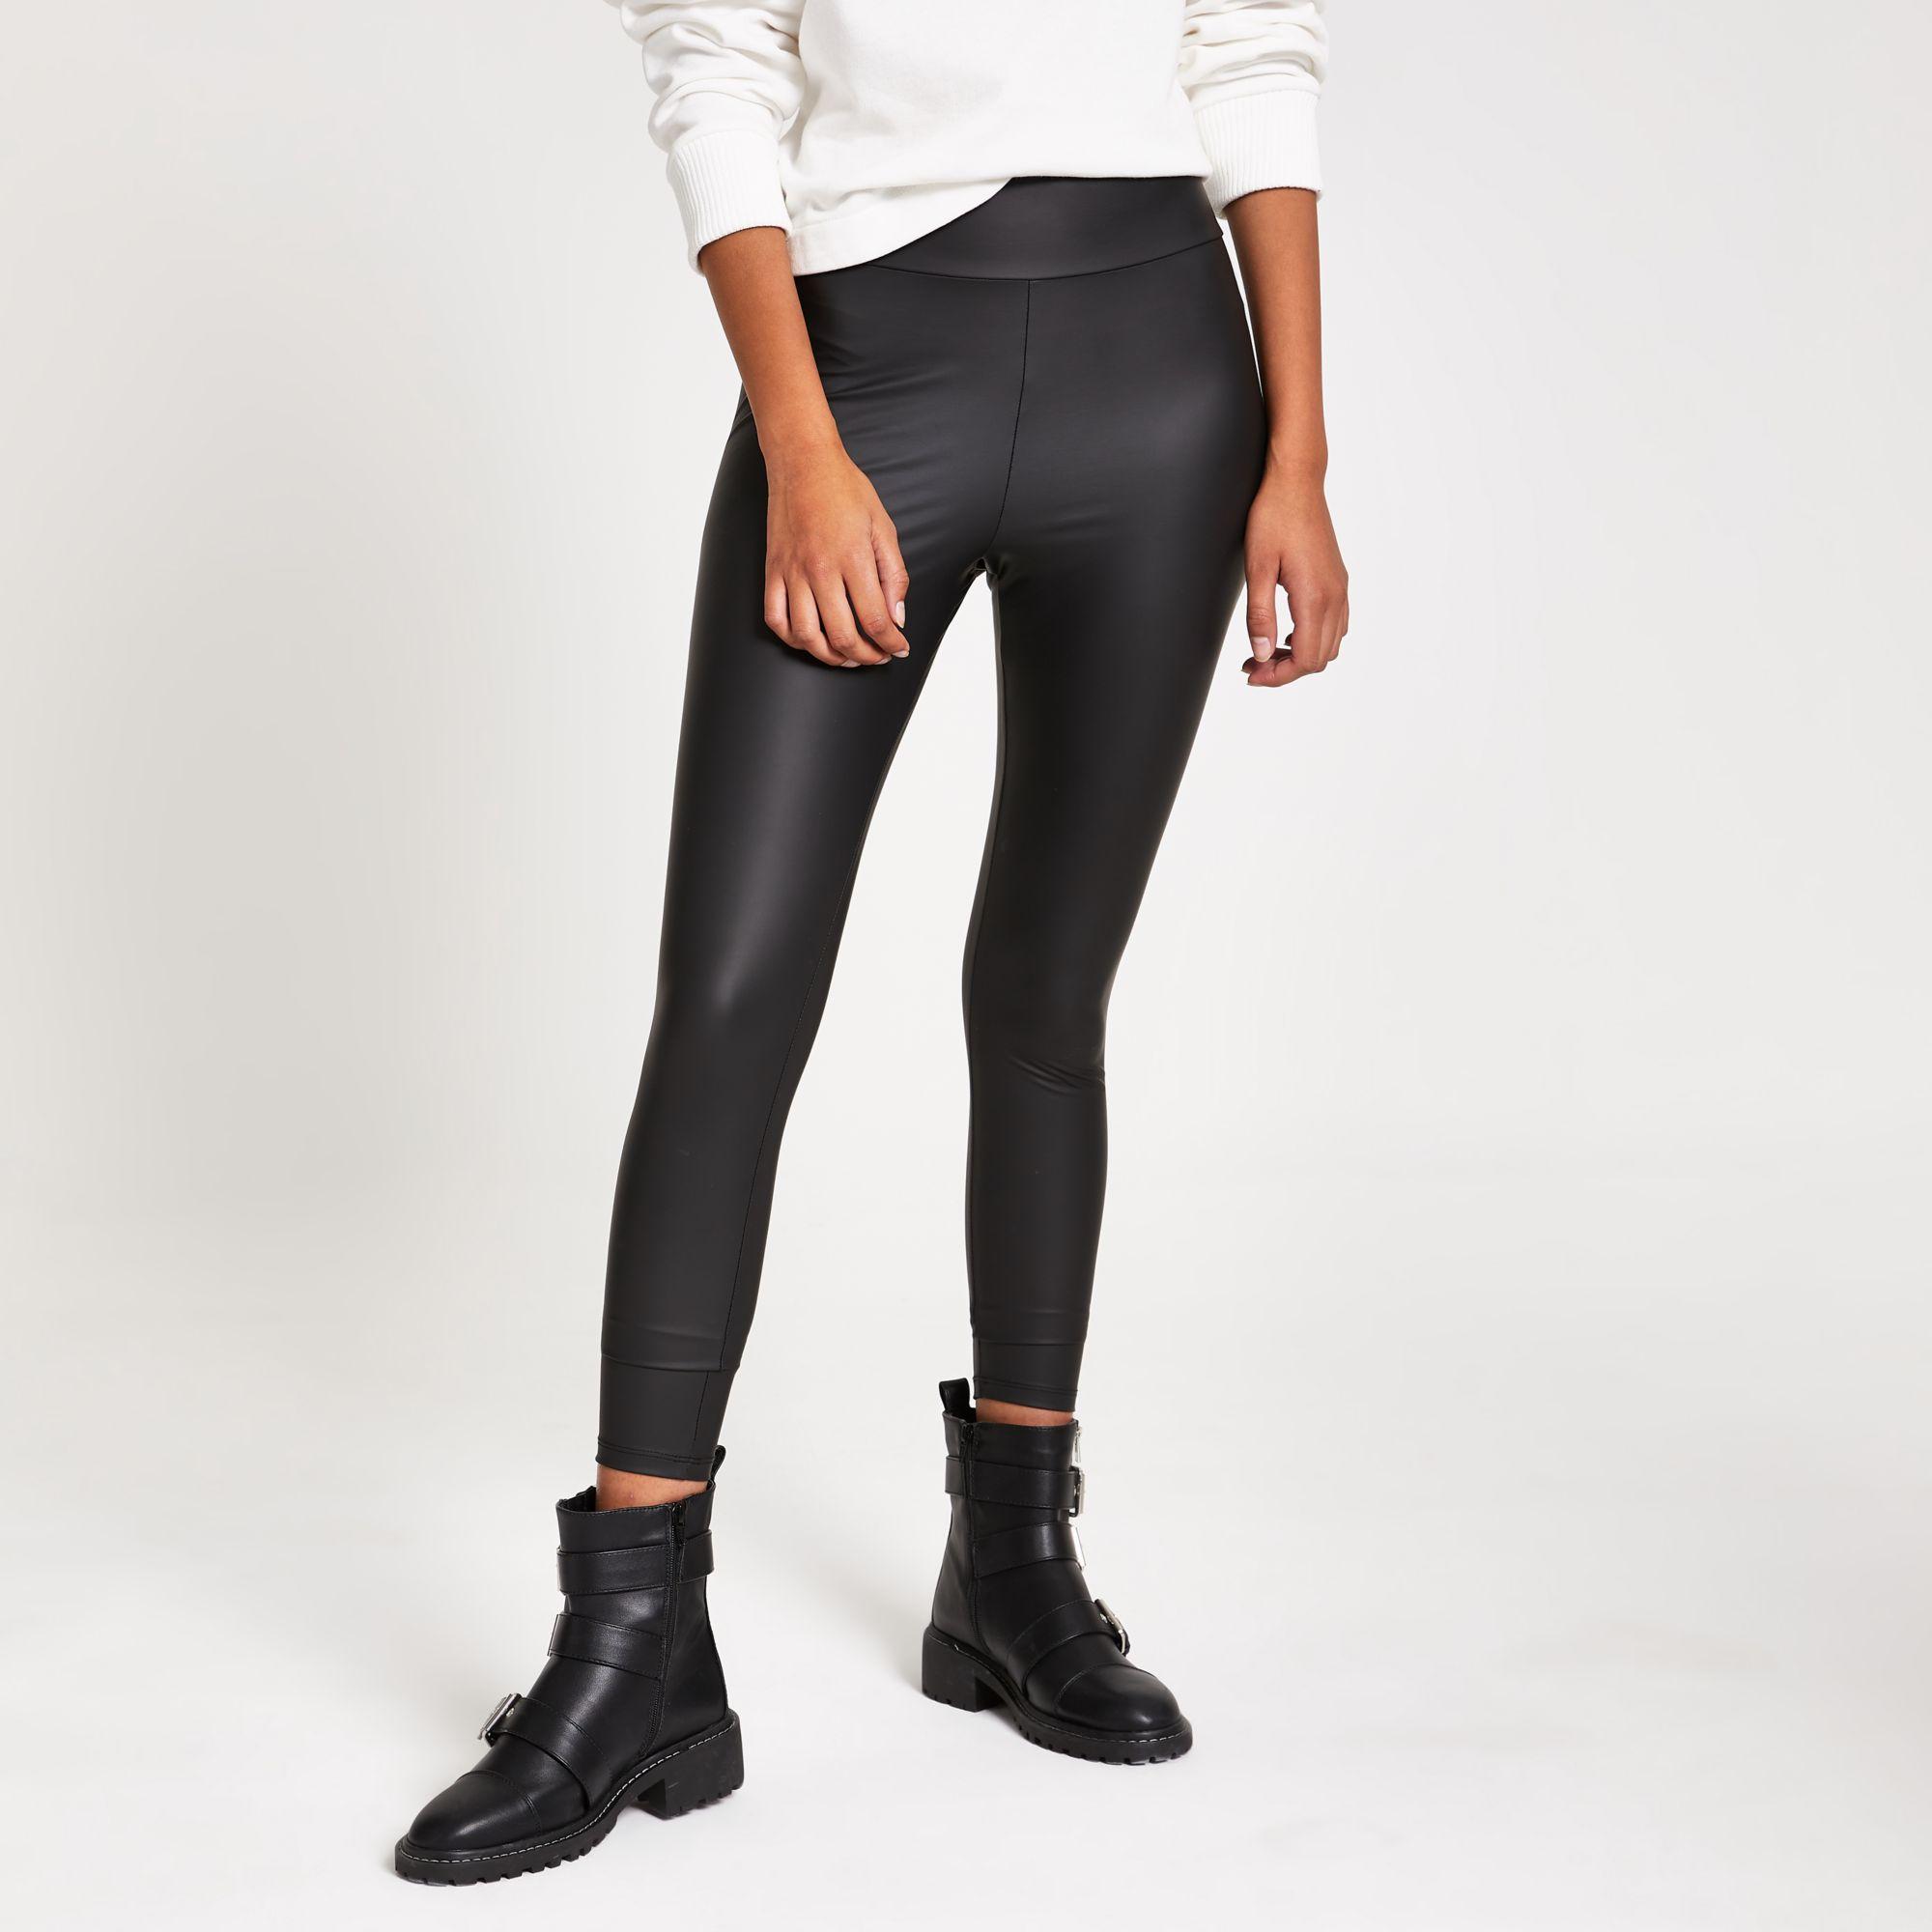 Wholesale Black Coated Lace Up Legging